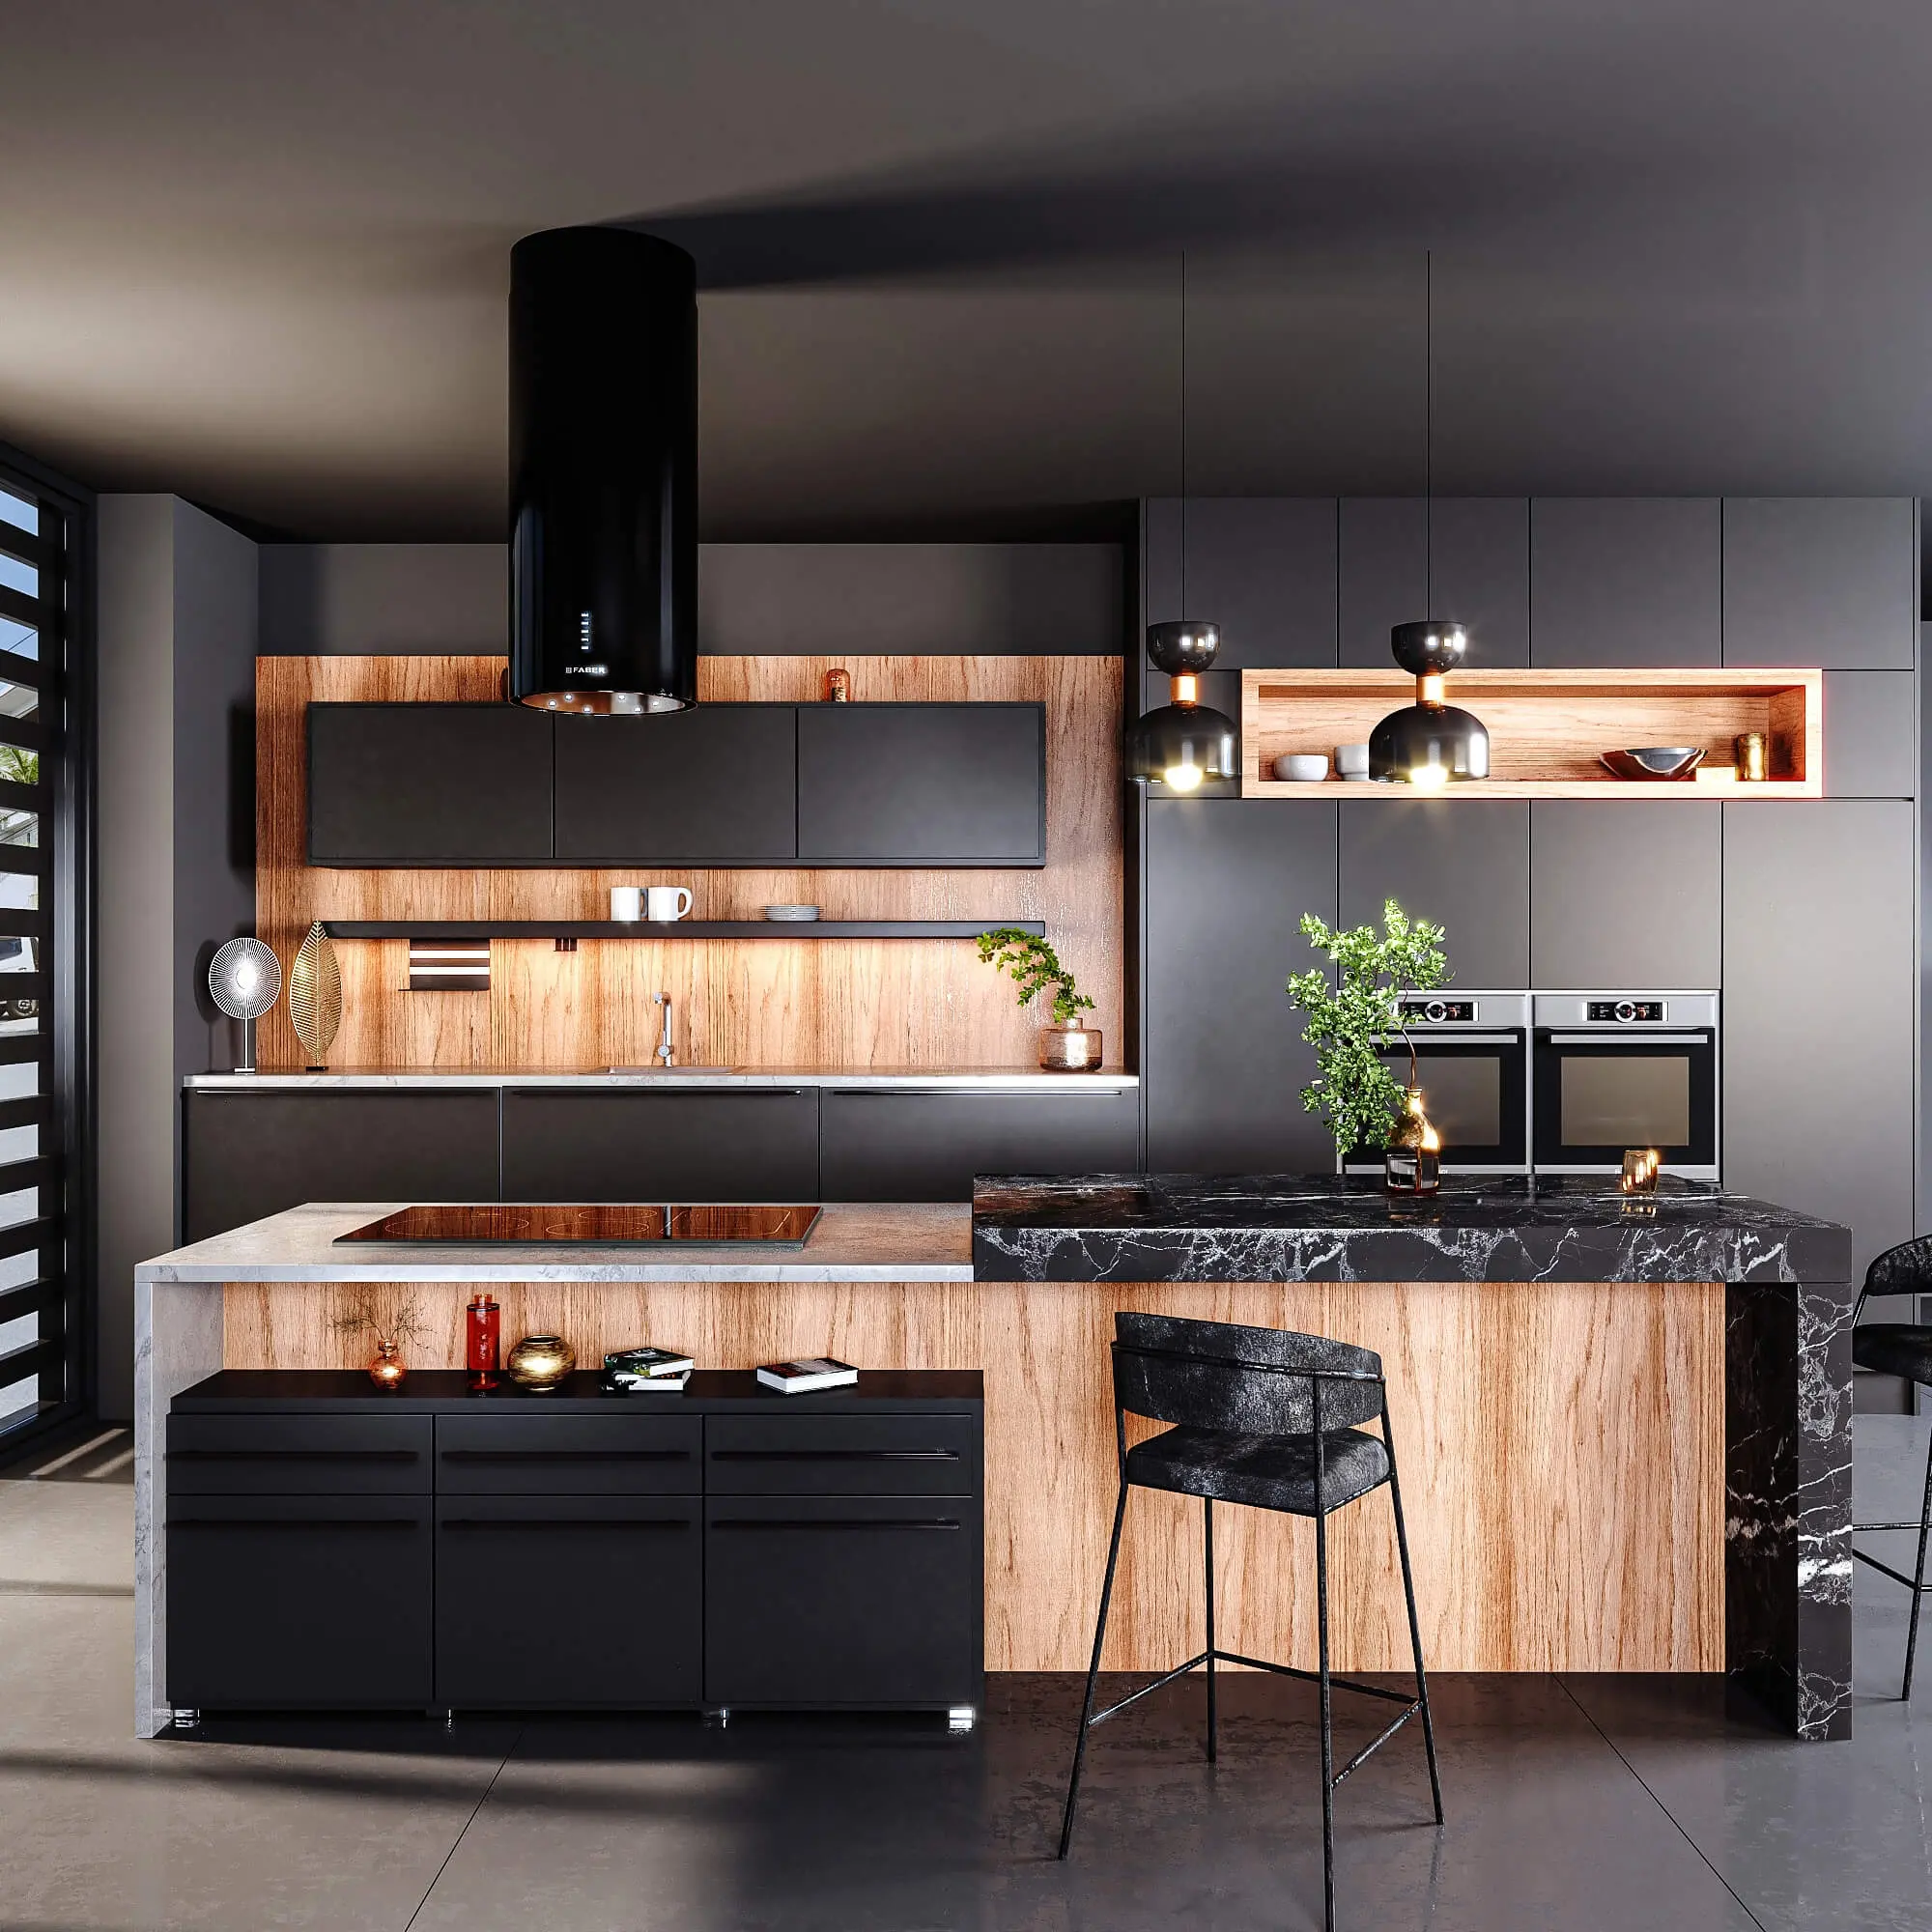 PA lemari dapur rumah tangga luxury modern lacquer design cabinet kitchen kabinet